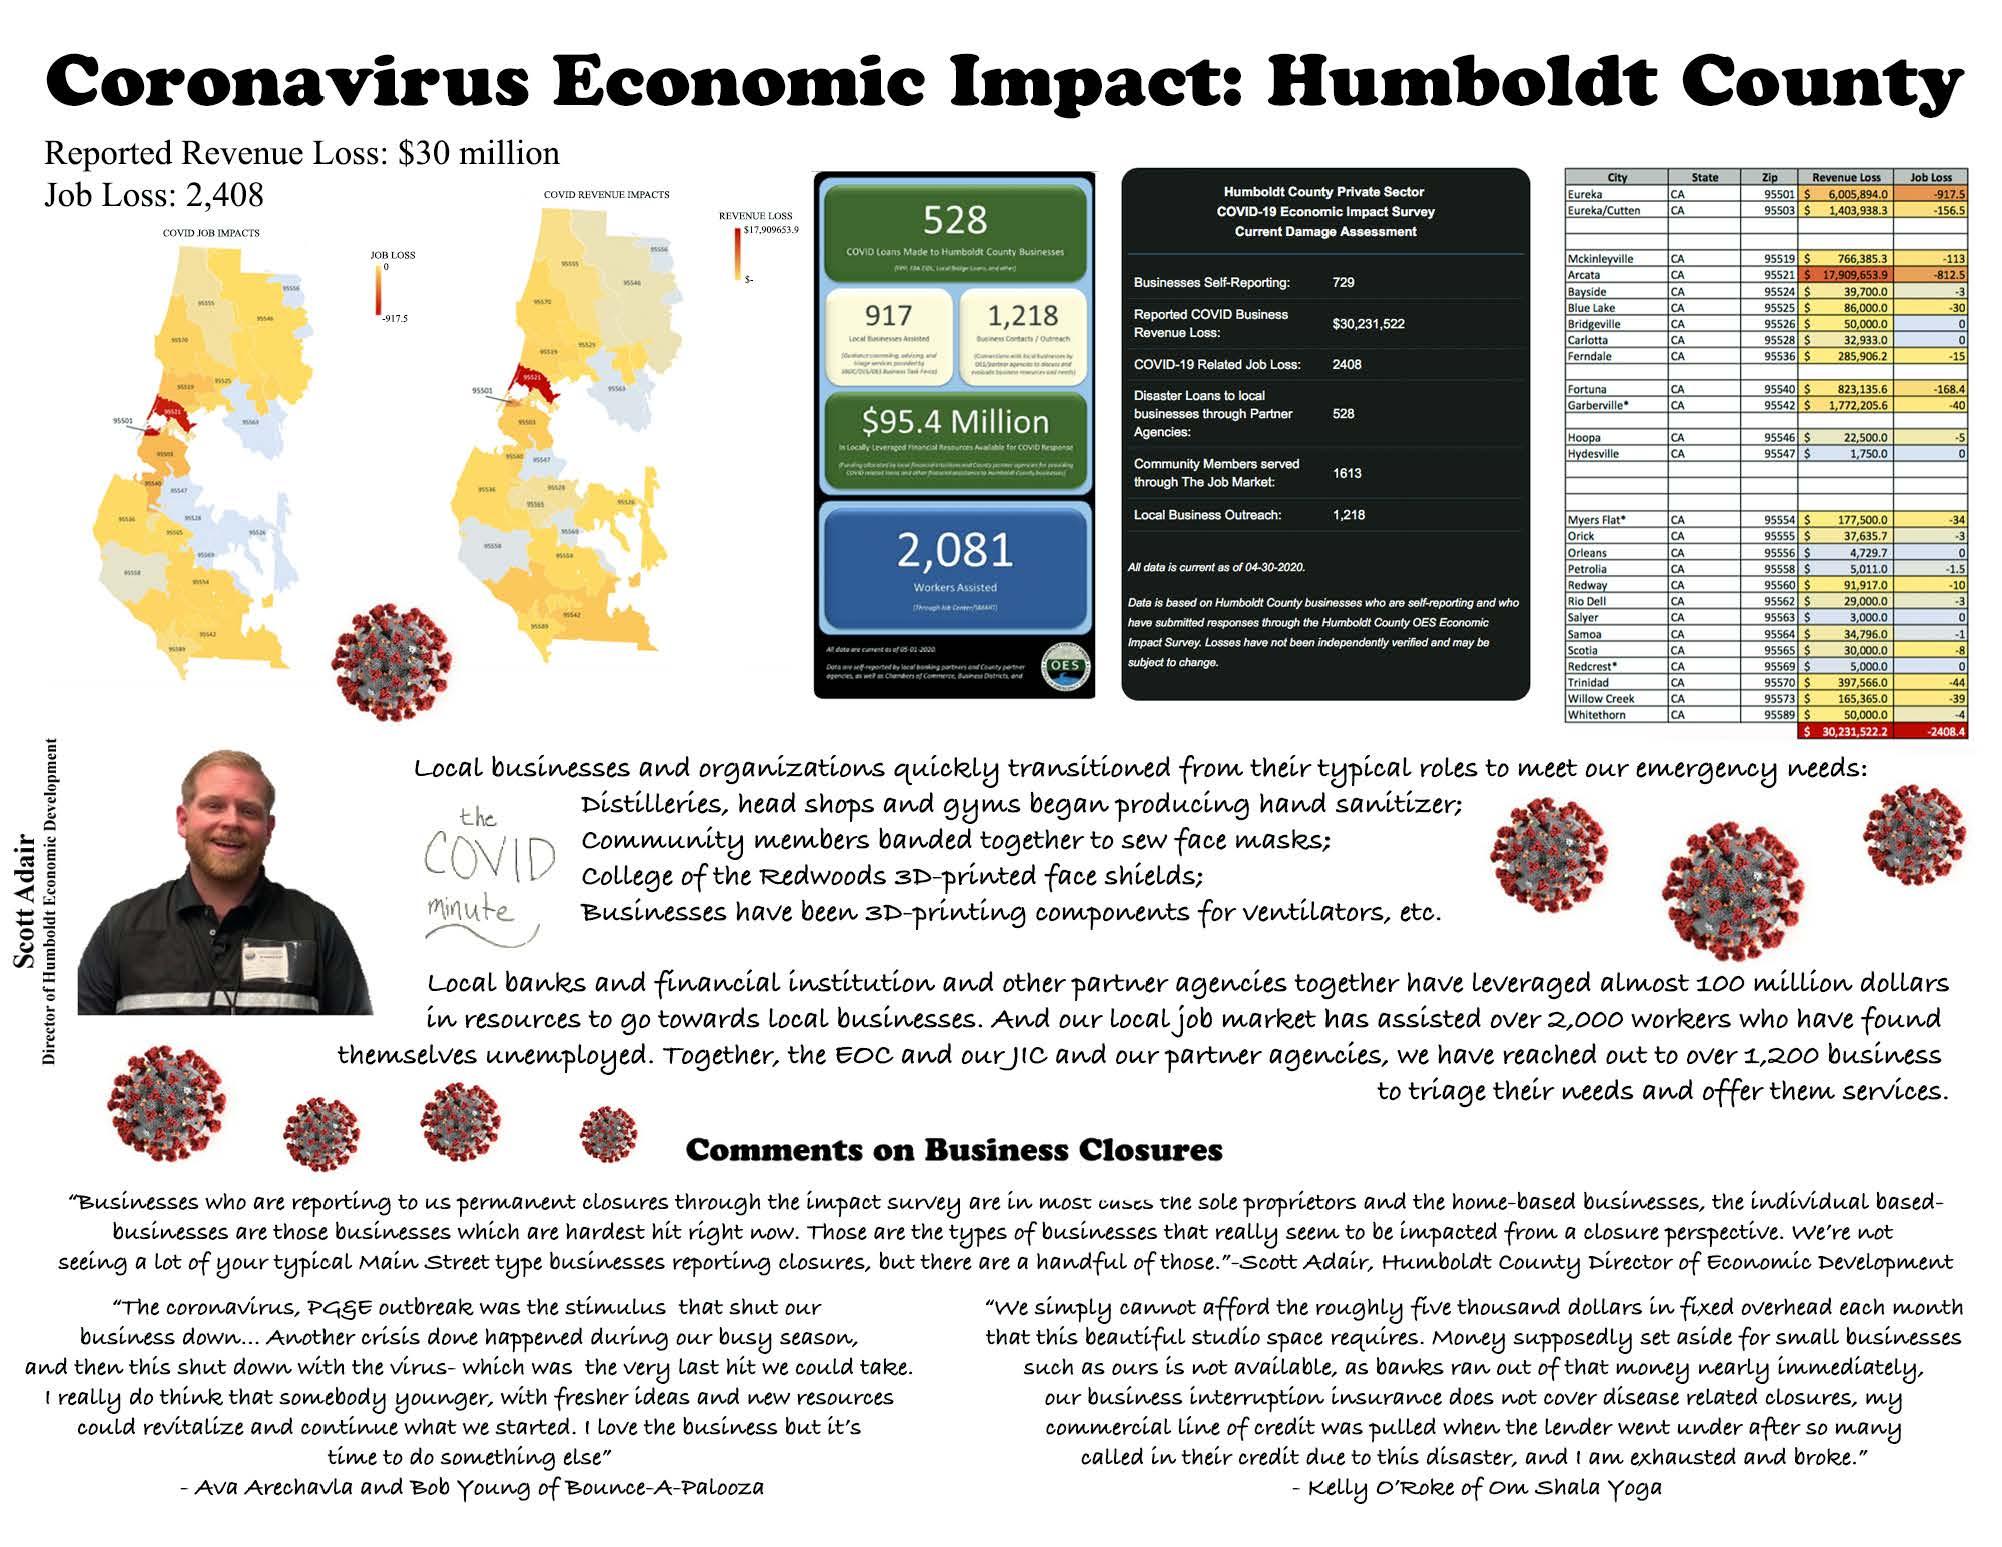 COVID-19 Economic Impact on Humboldt County